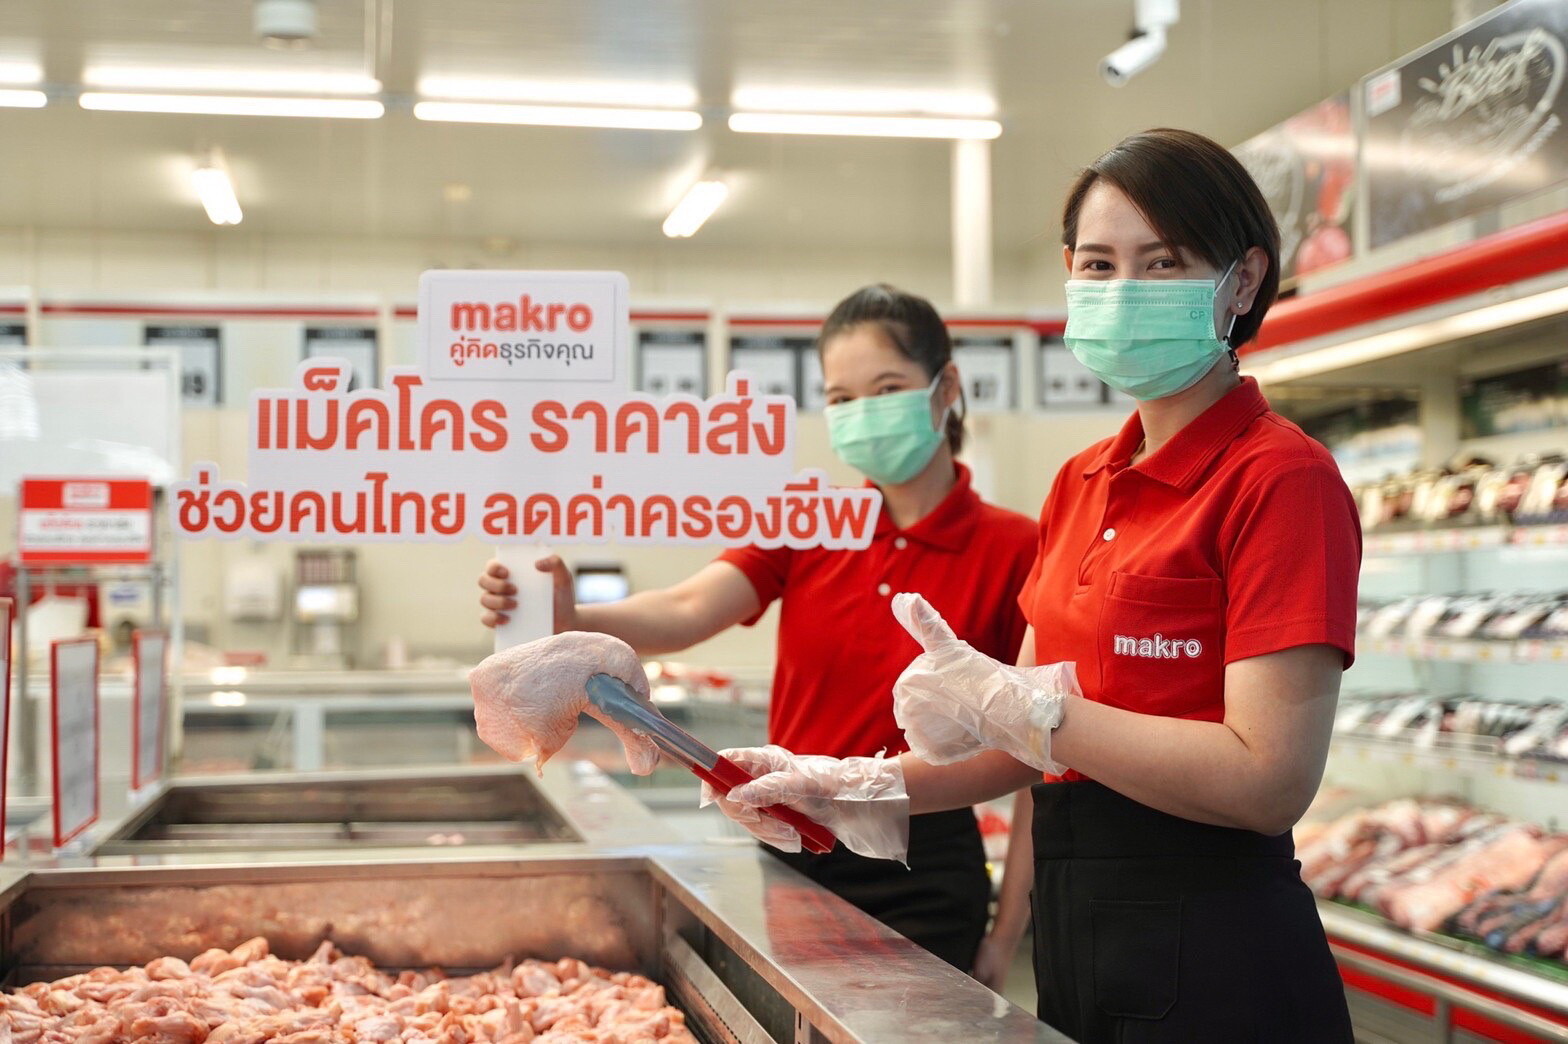 แม็คโคร จับมือกระทรวงพาณิชย์ ช่วยคนไทยสู้วิกฤตค่าครองชีพ ชูราคาขายส่ง ตรึงราคาสินค้าจำเป็นกว่า 4,000 รายการ บรรเทาภาระประชาชน